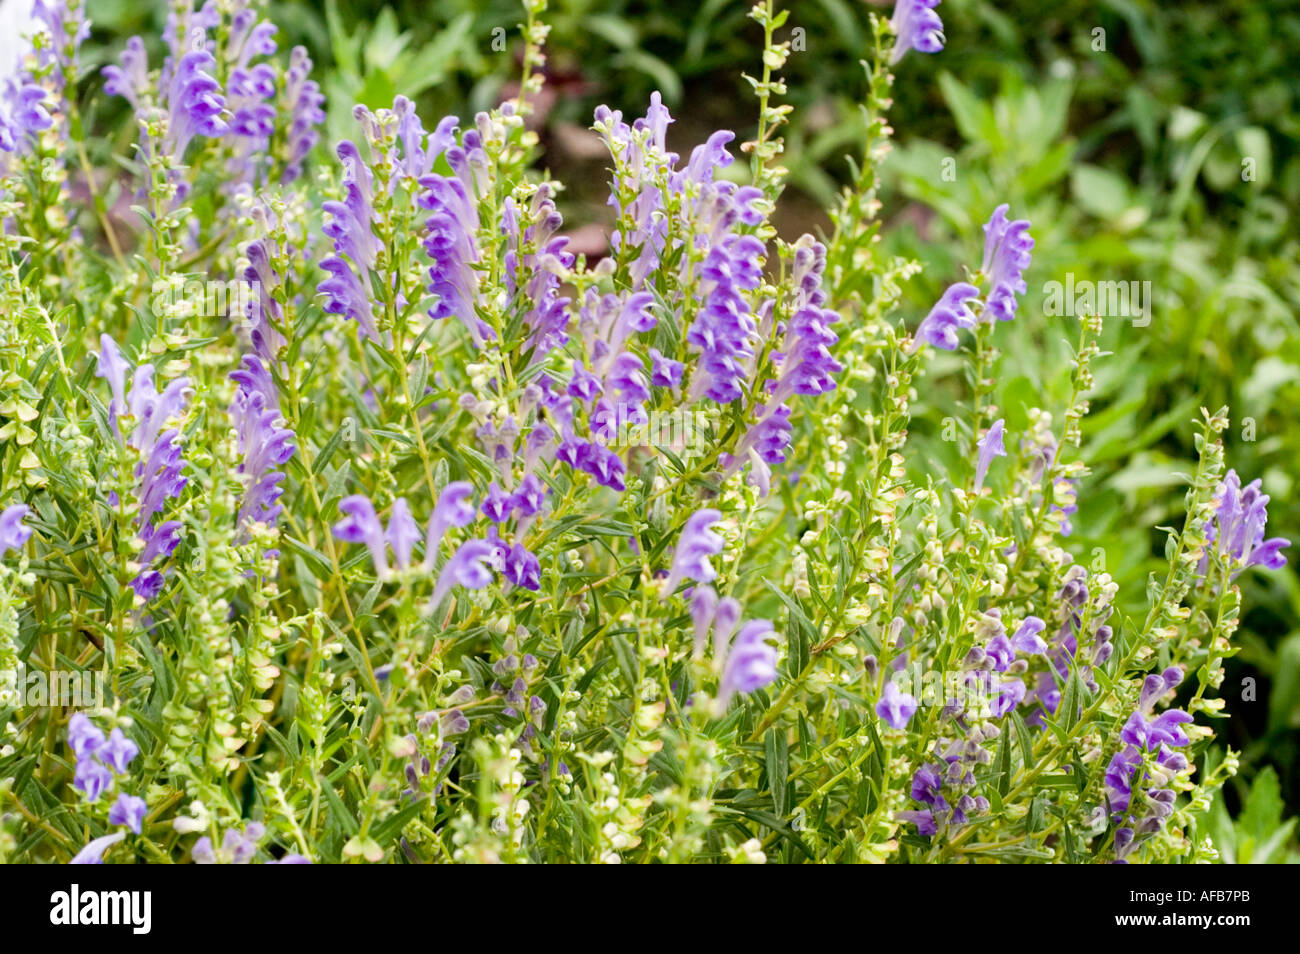 Fleurs violettes de Baikal de plantes médicinales chinoises ou Scultellaria  scutellaire baicalensis Sibérie Chine Mongolie lac Baikal Photo Stock -  Alamy